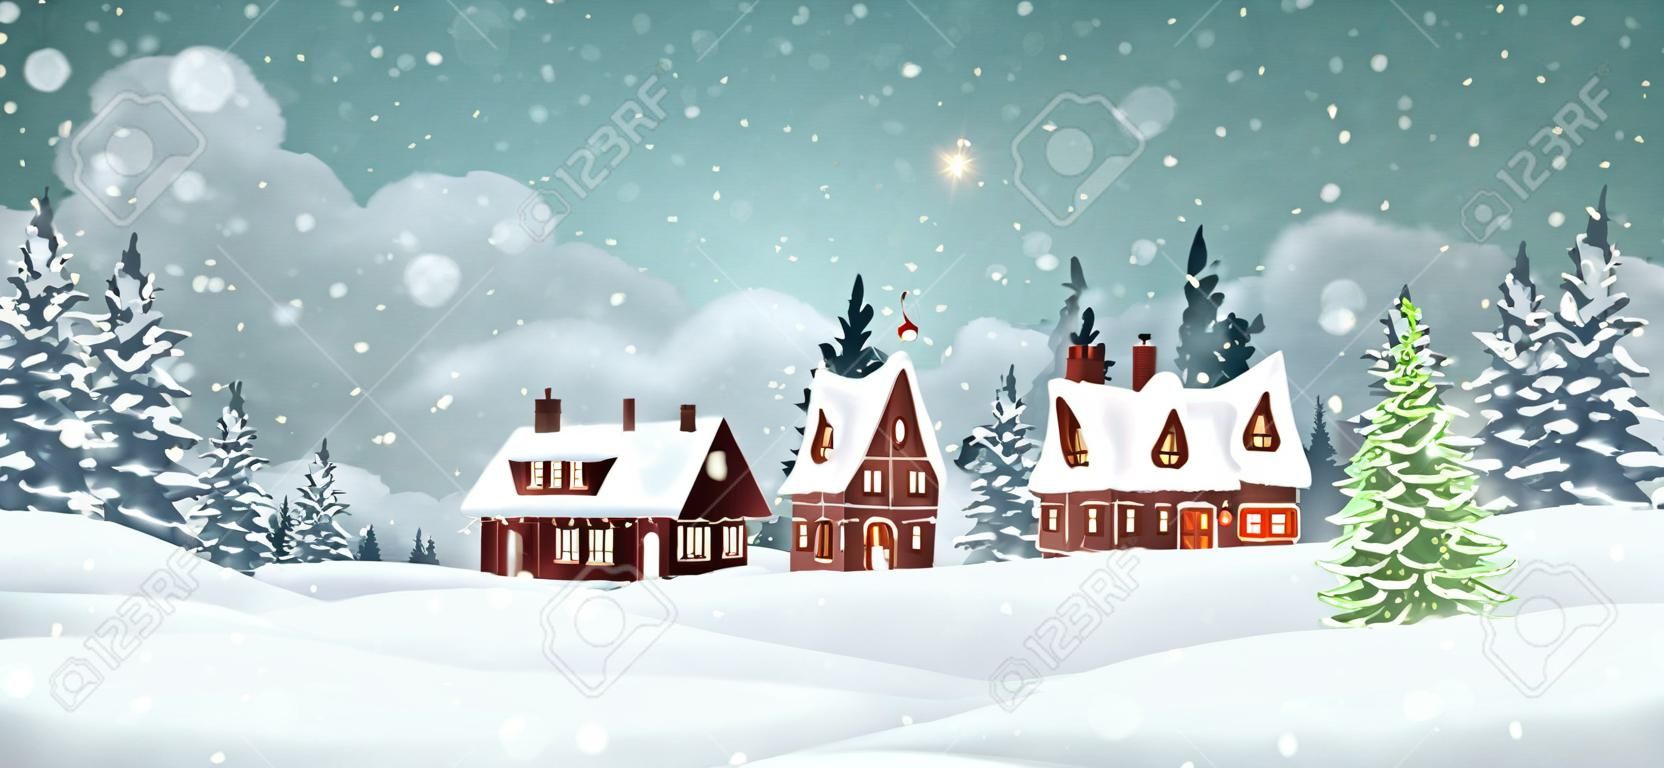 Weihnachtsdorfhäuser mit Winterkiefernwald. Weihnachtsferien-Vektor-Illustration